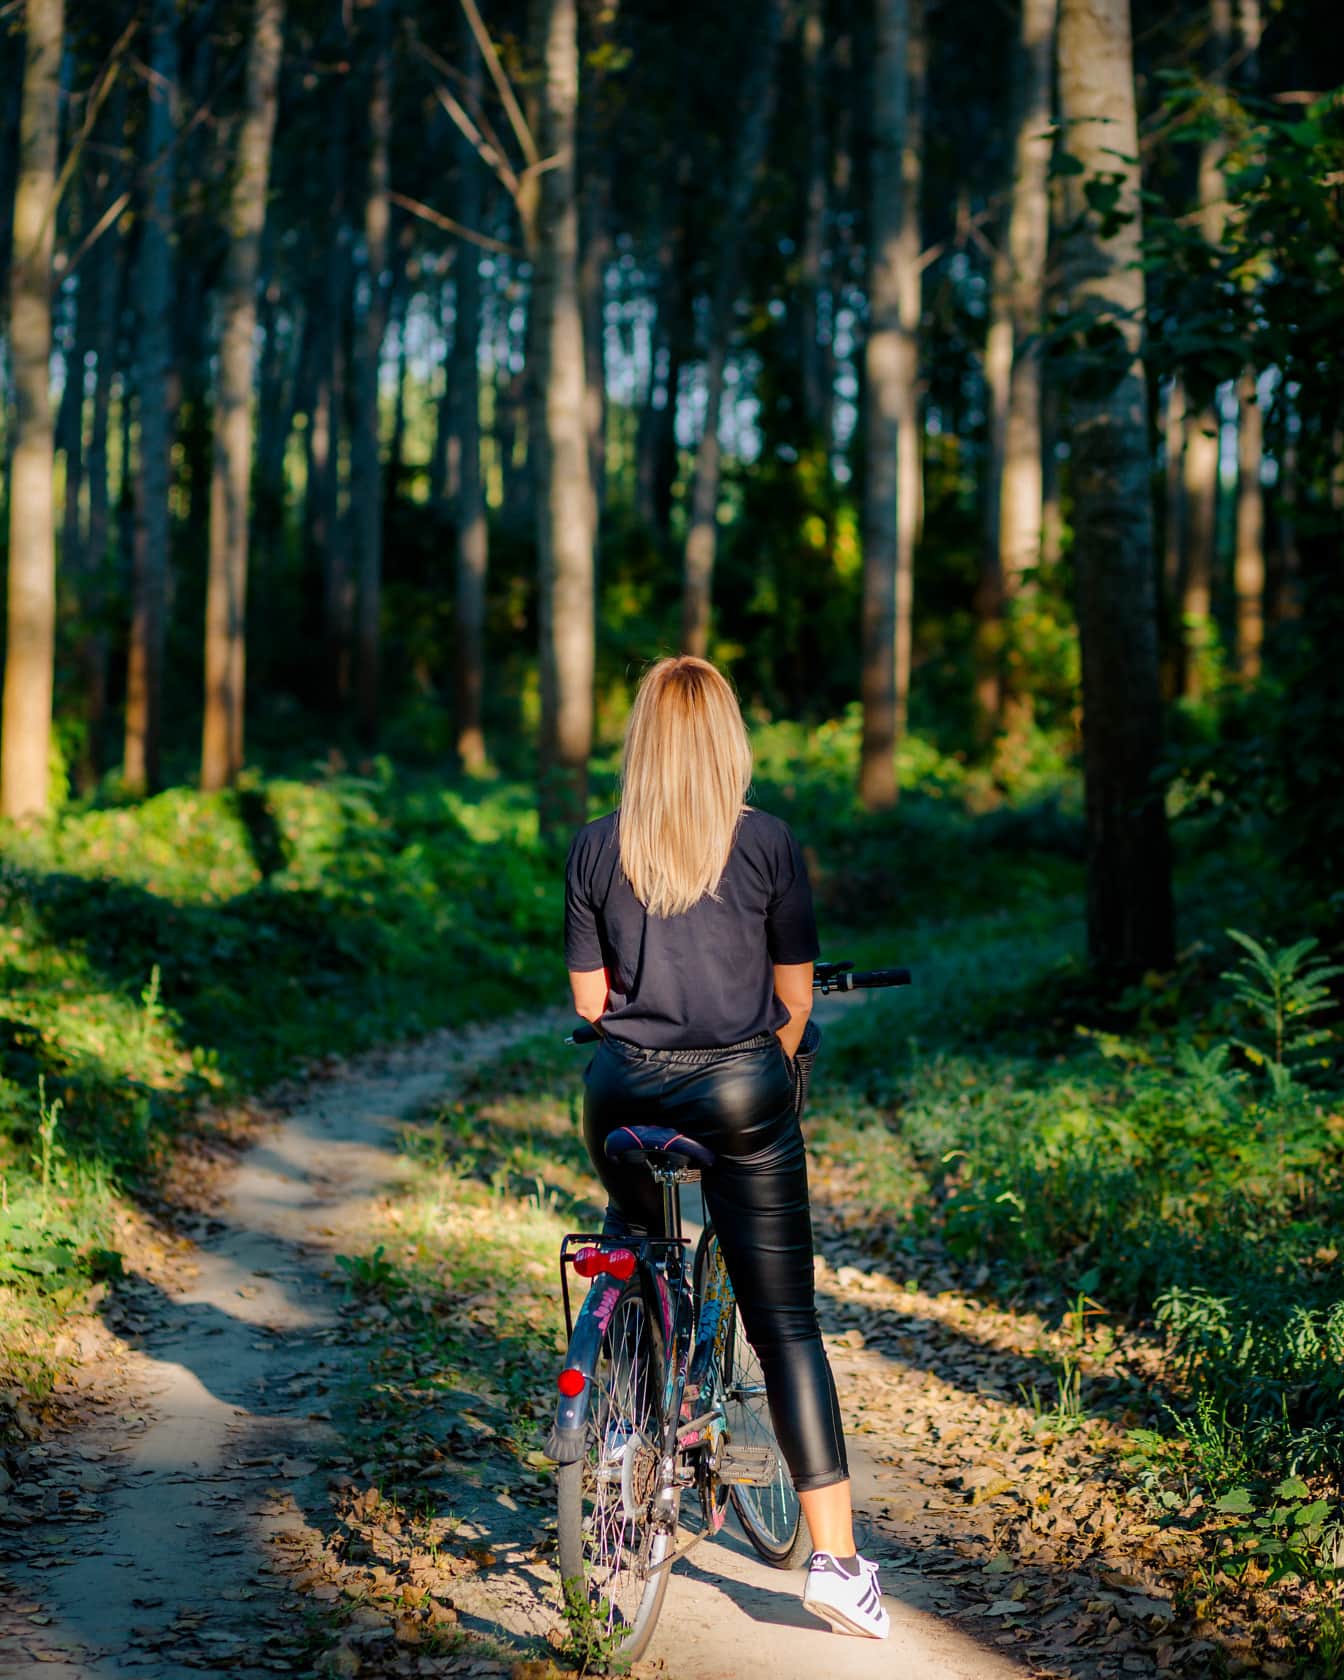 Remaja berambut pirang bersepeda di jalan hutan